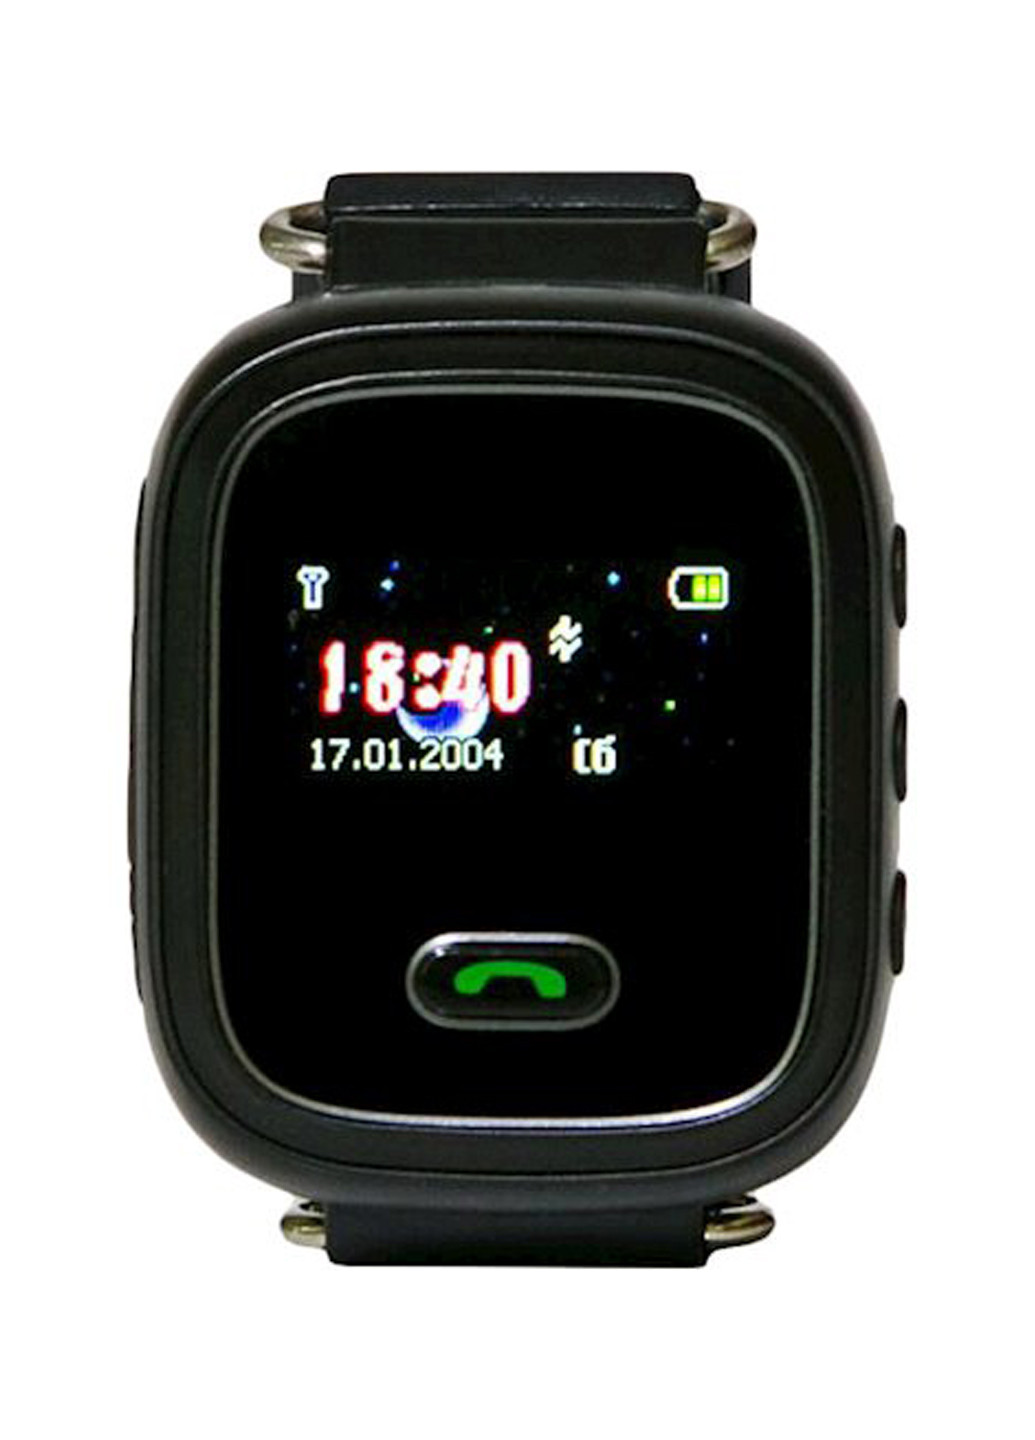 Детские GPS часы-телефон K11 GoGPS Me me k11 (133777555)